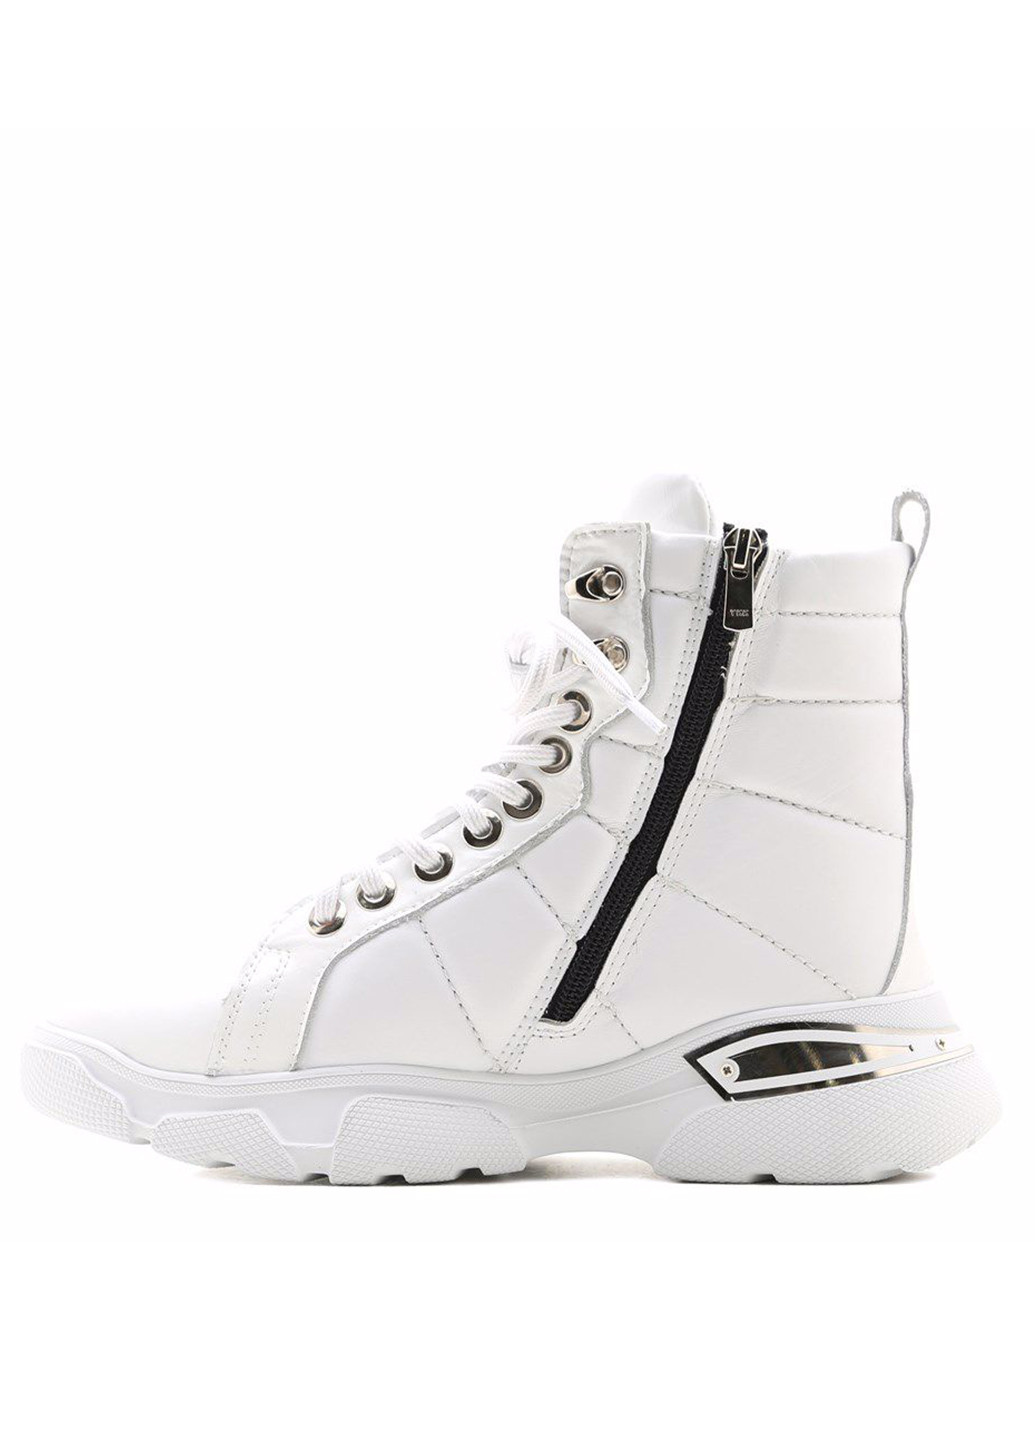 Зимние ботинки Prego со шнуровкой, с аппликацией, с белой подошвой